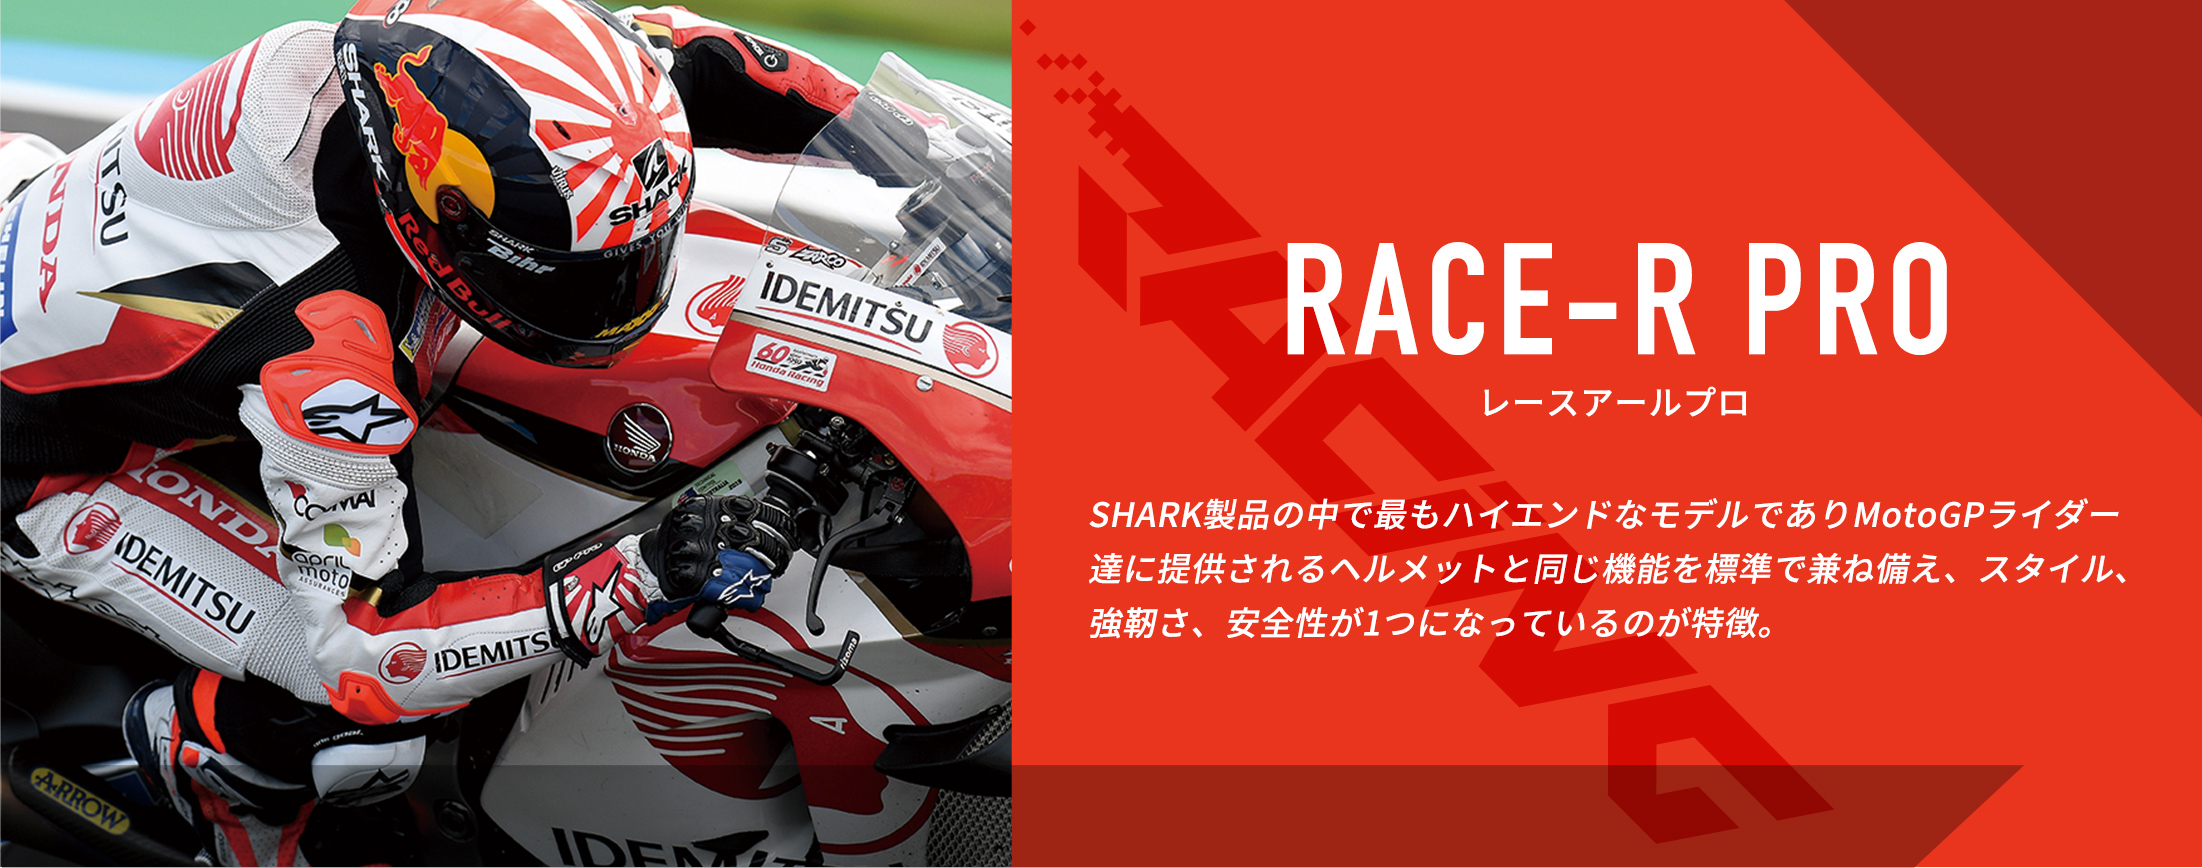 RACE-R PRO レースアールプロ　SHARK製品の中で最もハイエンドなモデルでありMotoGPライダー達に提供されるヘルメットと同じ機能を標準で兼ね備え、スタイル、強靭さ、安全性が1つになっているのが特徴。